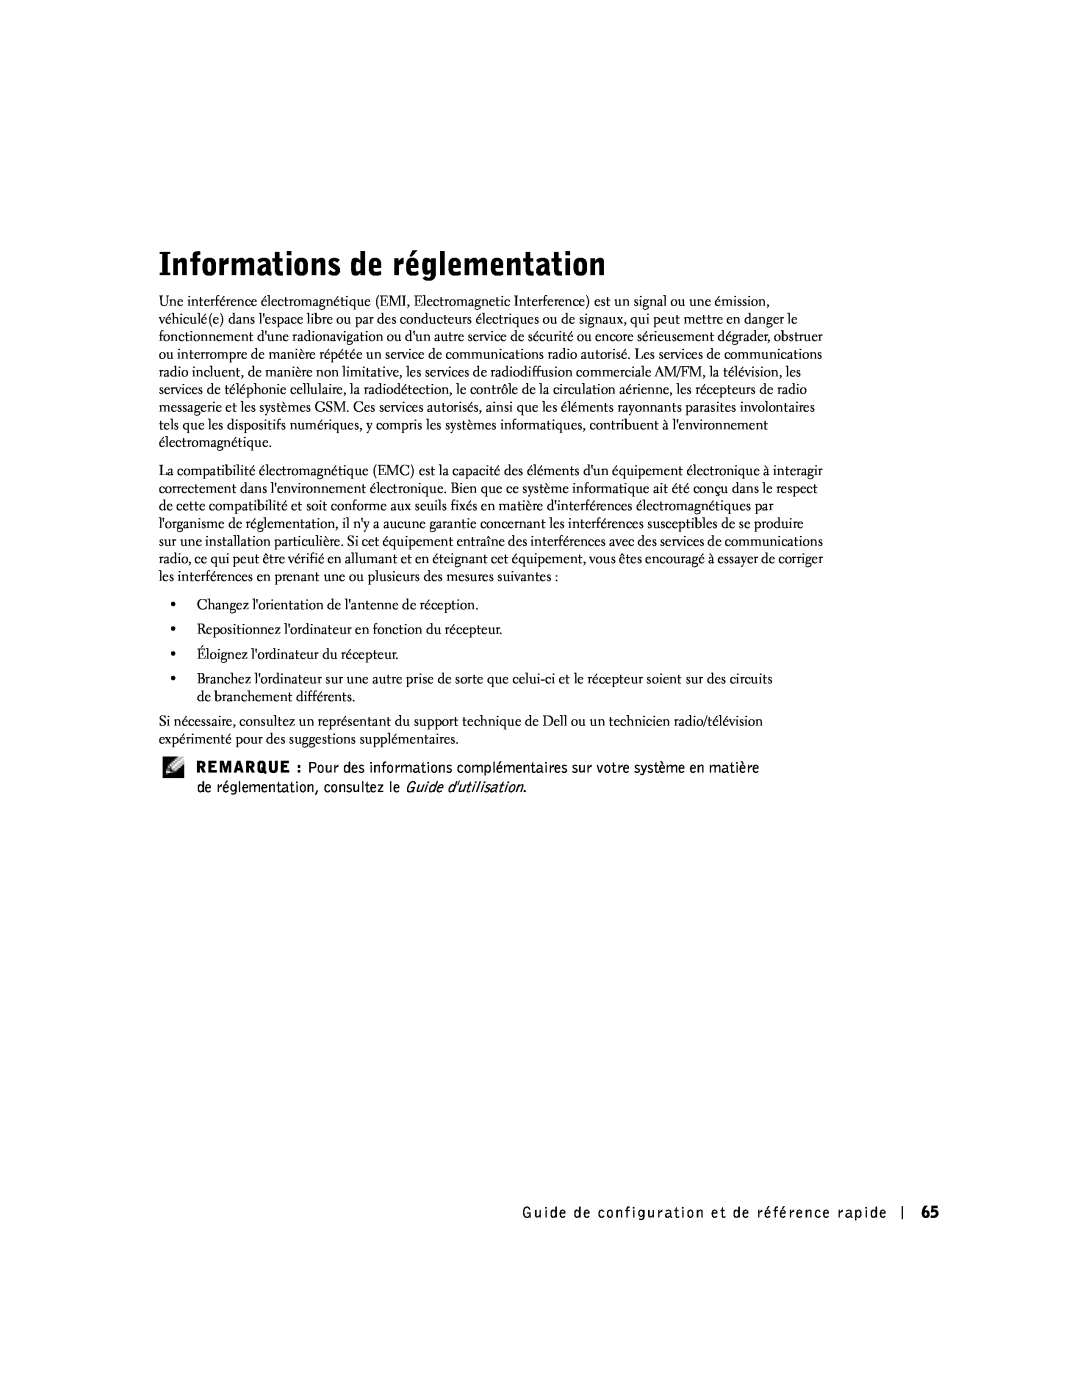 Dell SX manual Informations de réglementation 